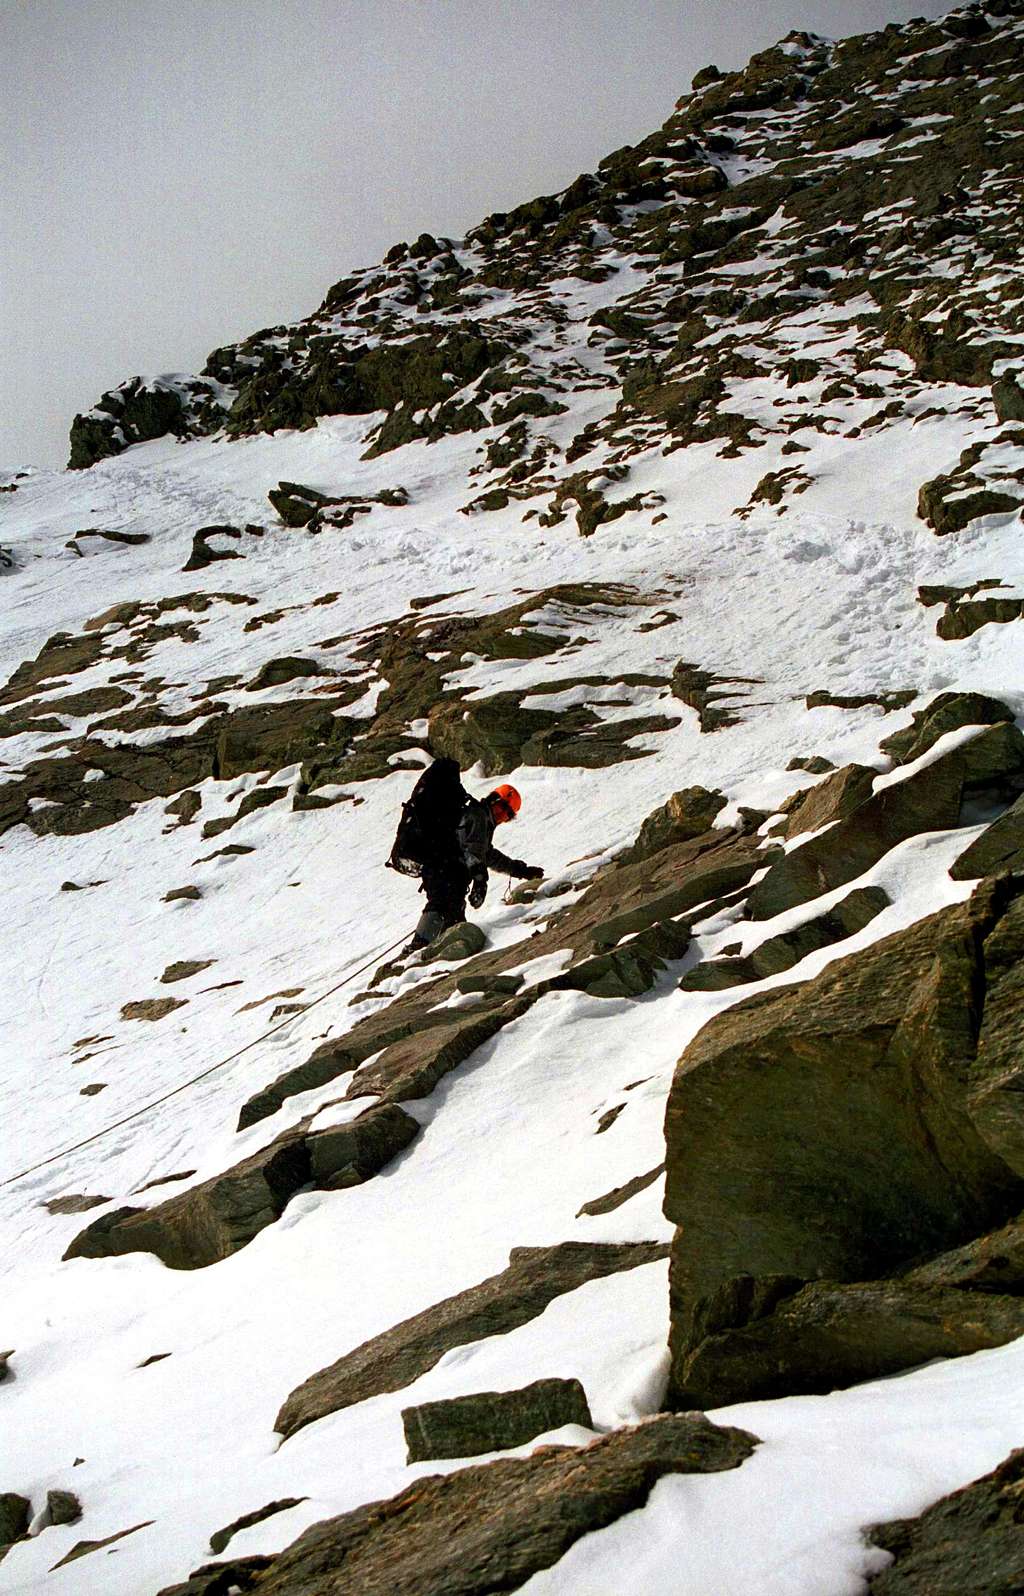 Downclimbing Matterhorn Winter